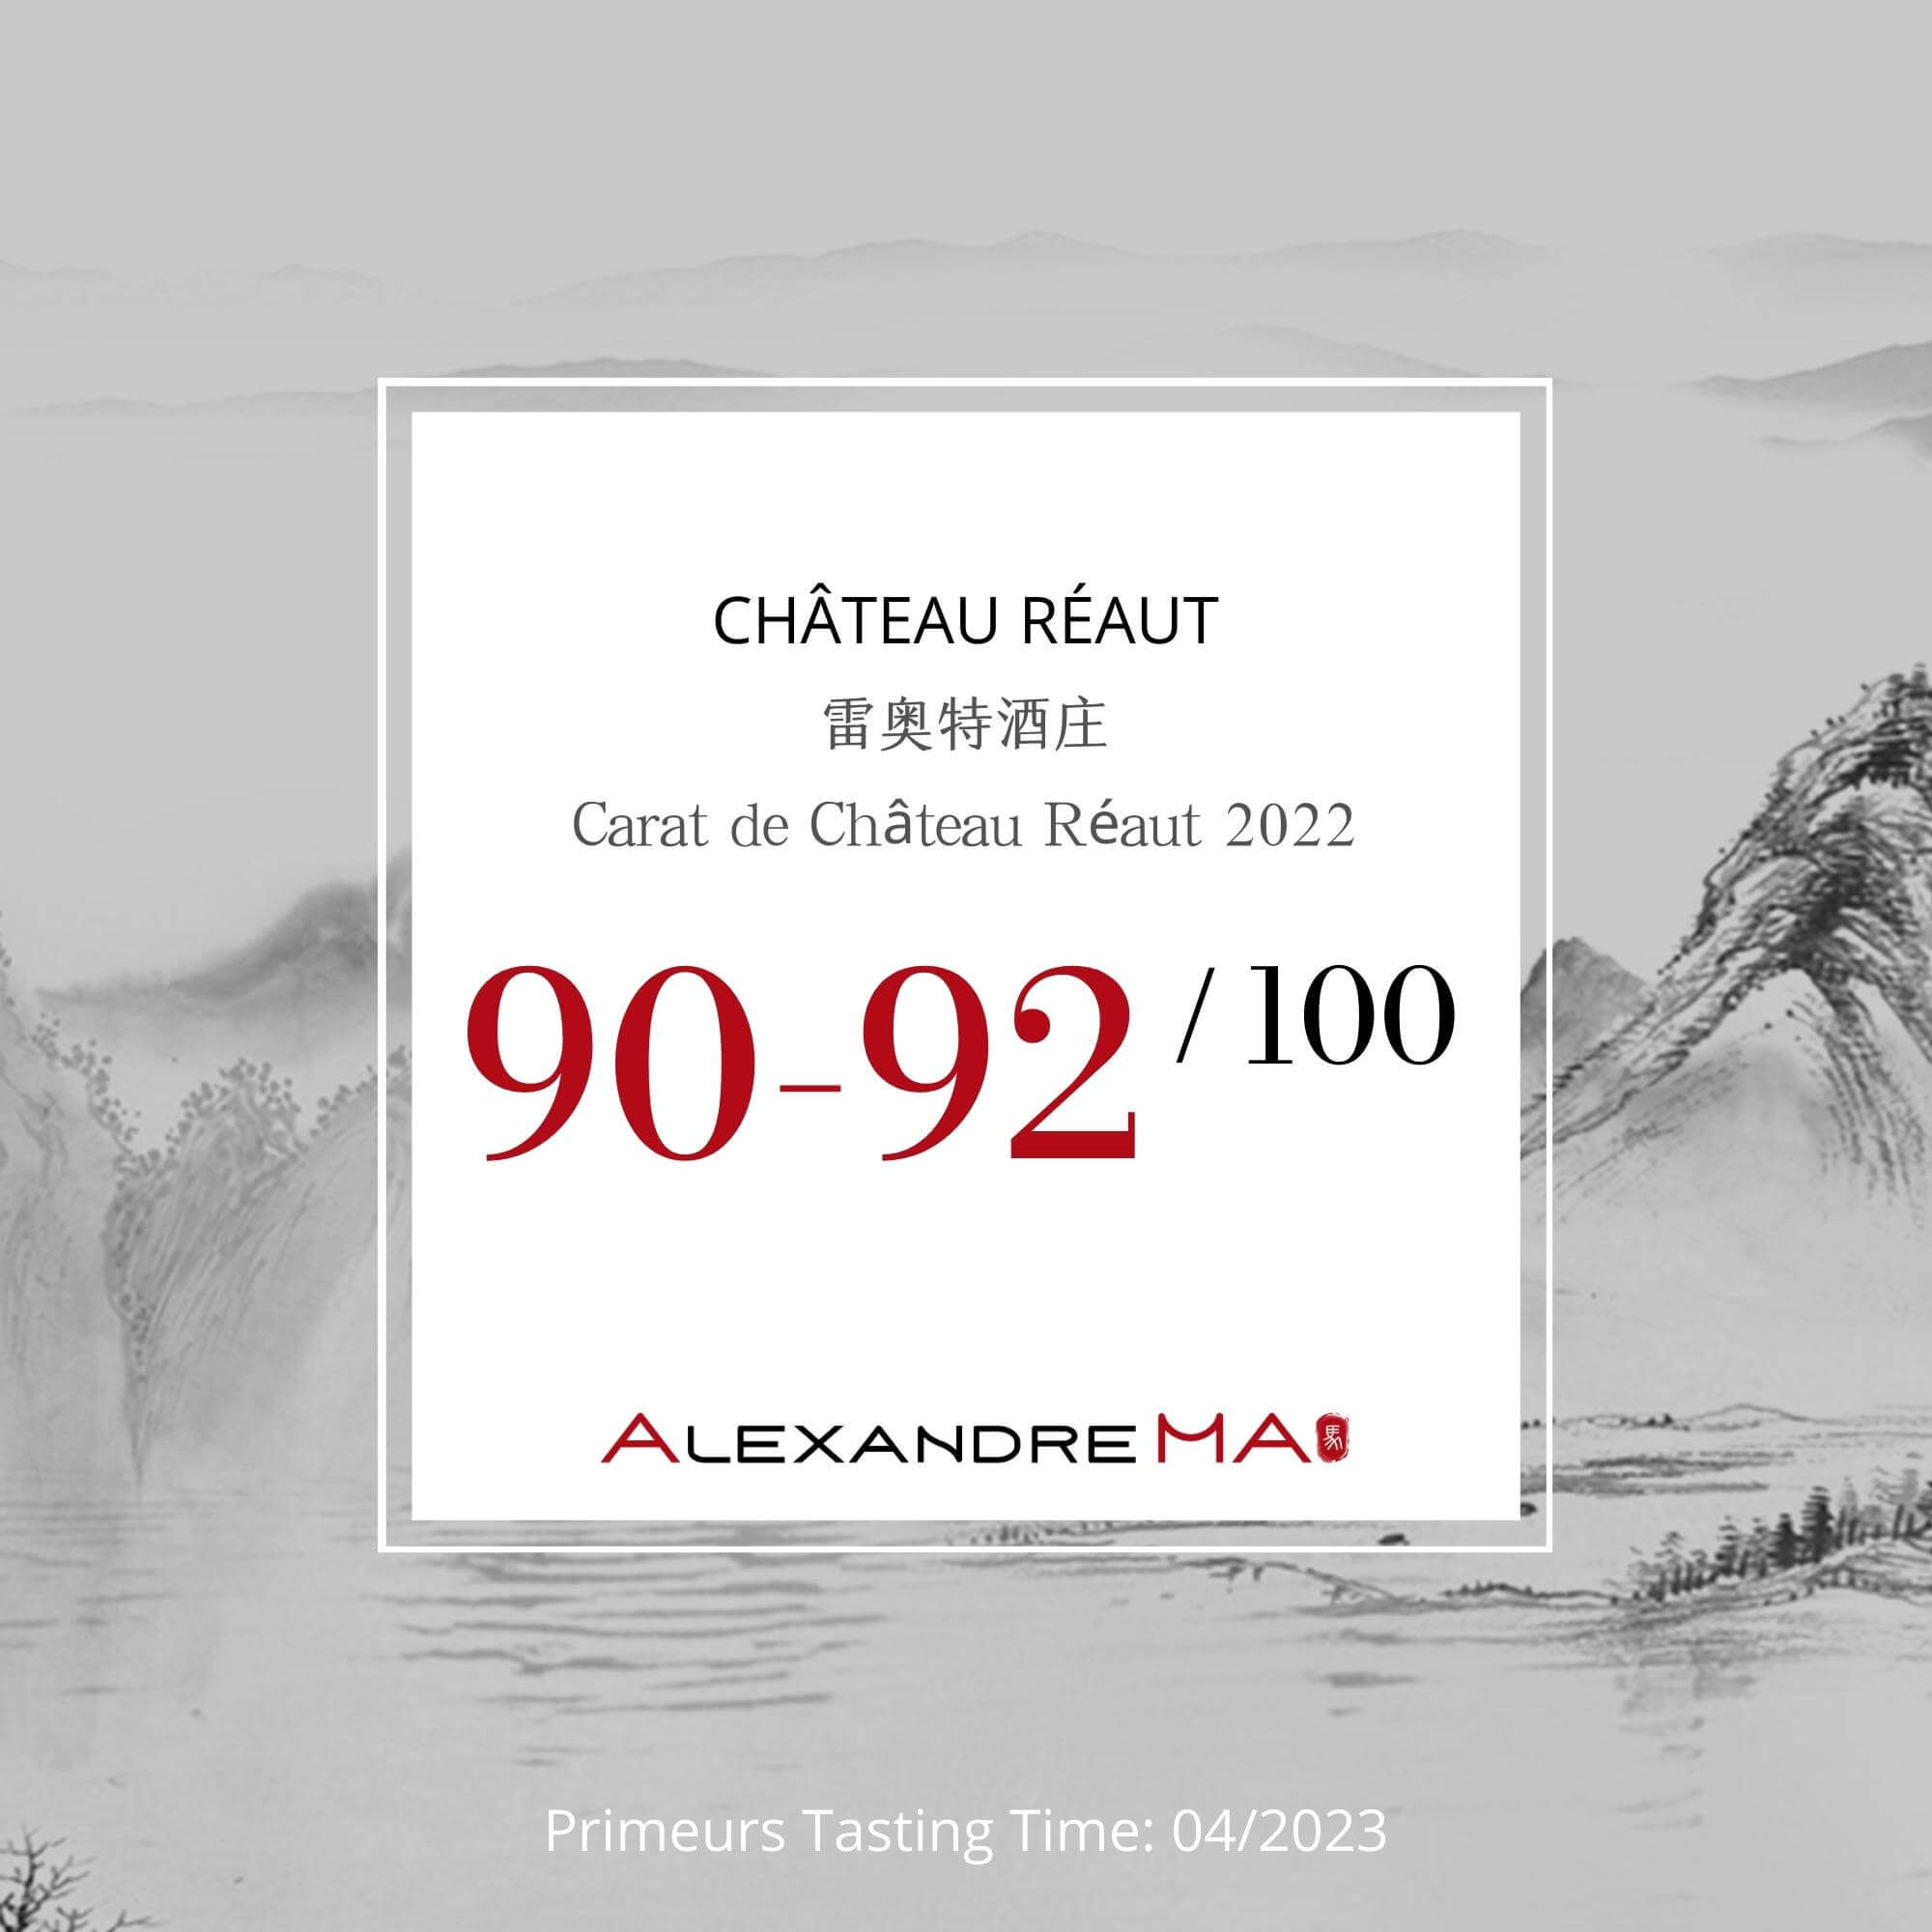 Château Réaut – Carat de Château Réaut 2022 Primeurs - Alexandre MA